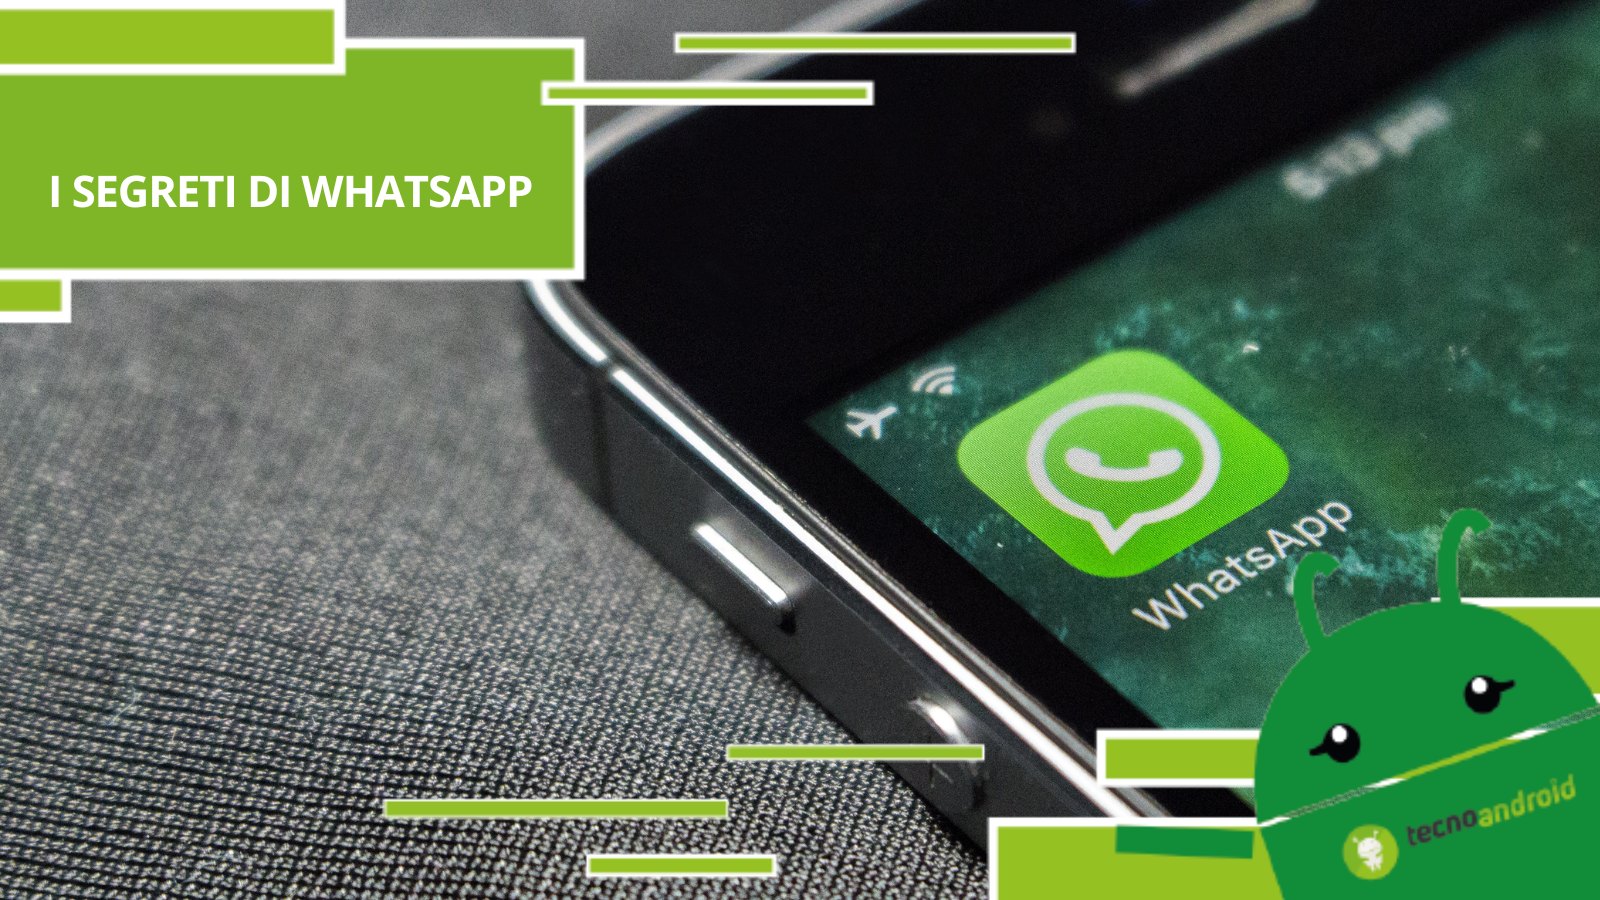 Whatsapp, la piattaforma nasconde dei trucchi incredibili che meriti di conoscere